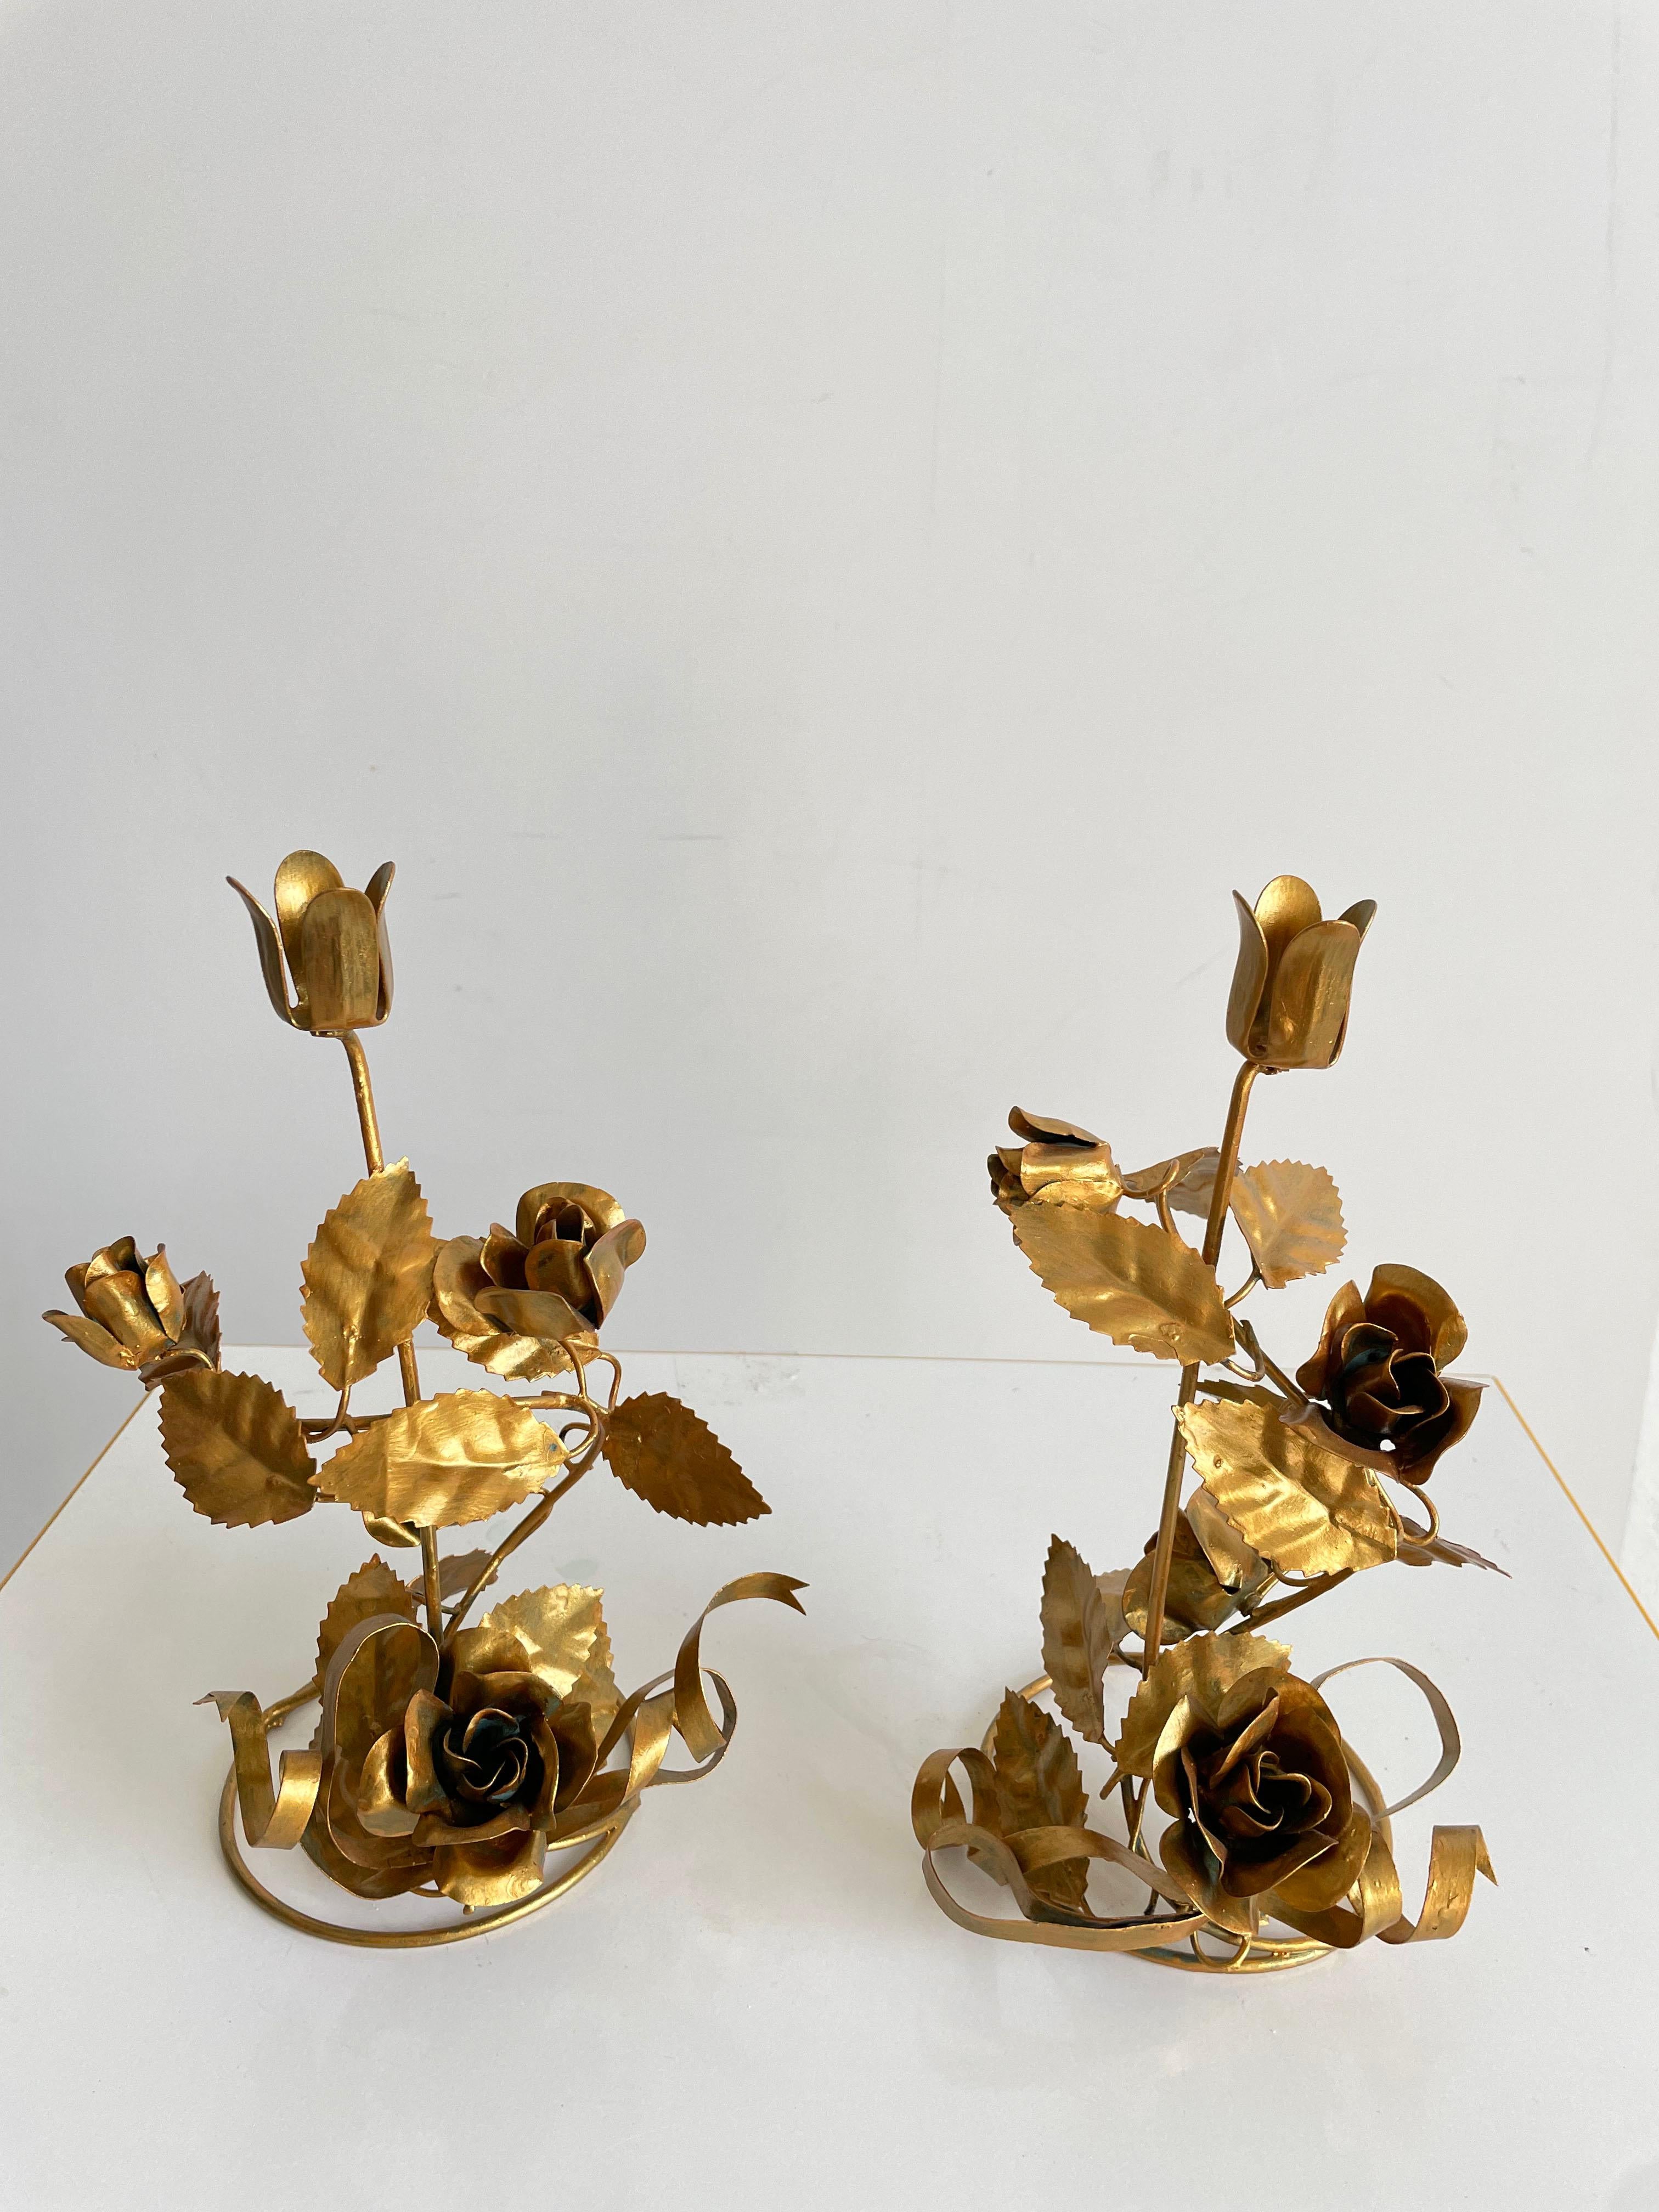 Paire de chandeliers italiens vintage des années 1960

Délicate décoration florale en métal doré, chaque chandelier est doté d'un bougeoir en forme de fleur mesurant 2 cm de diamètre.

Les chandeliers sont en très bon état d'origine, avec de petites